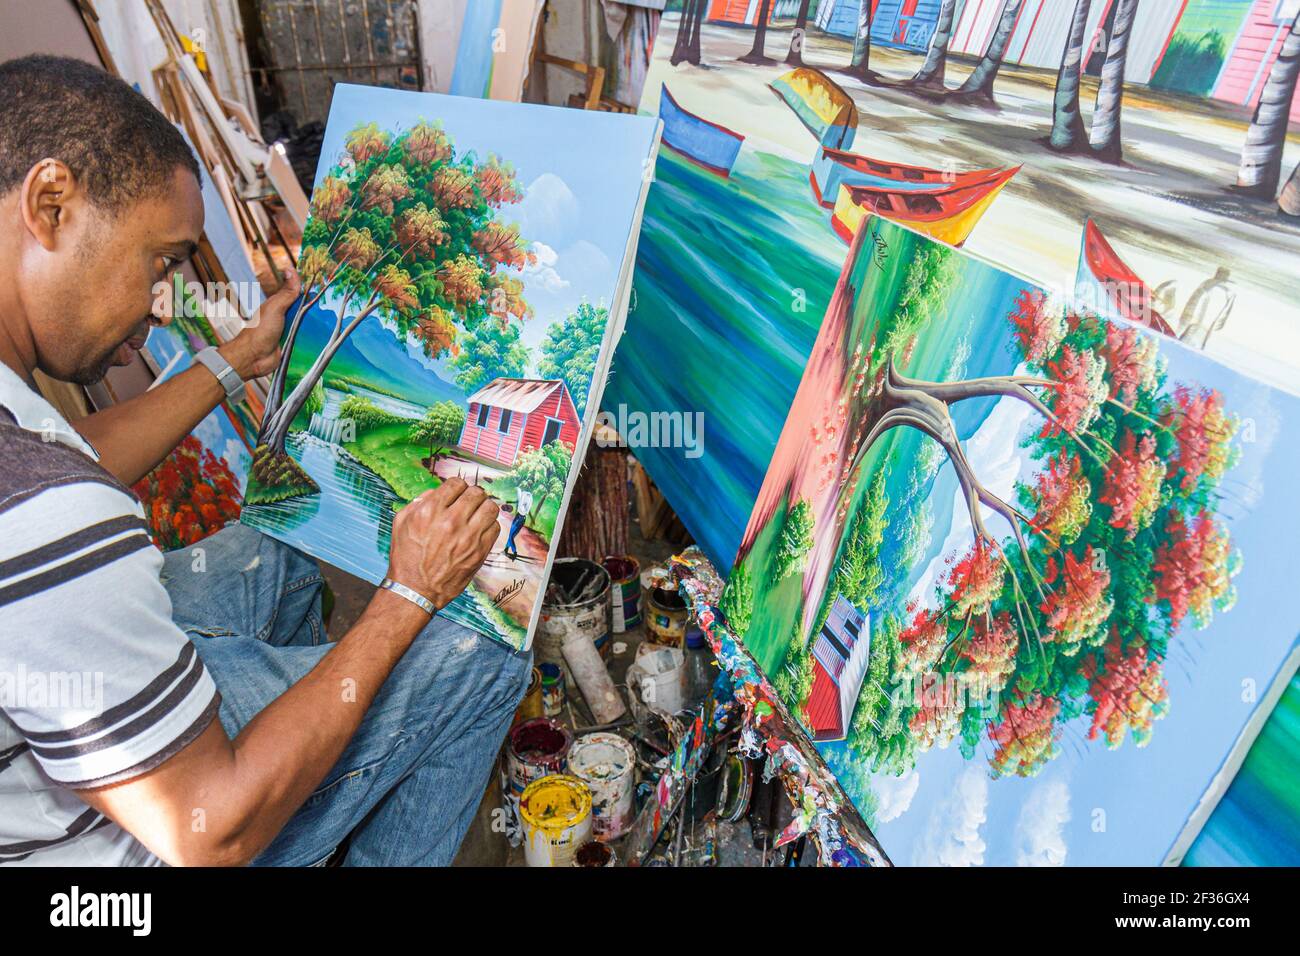 Santo Domingo République Dominicaine,Ciudad Colonia Zona Colonial,Mercado modelA marché hispanique homme artiste peintre galerie de peinture, toile acrylique peinture Banque D'Images